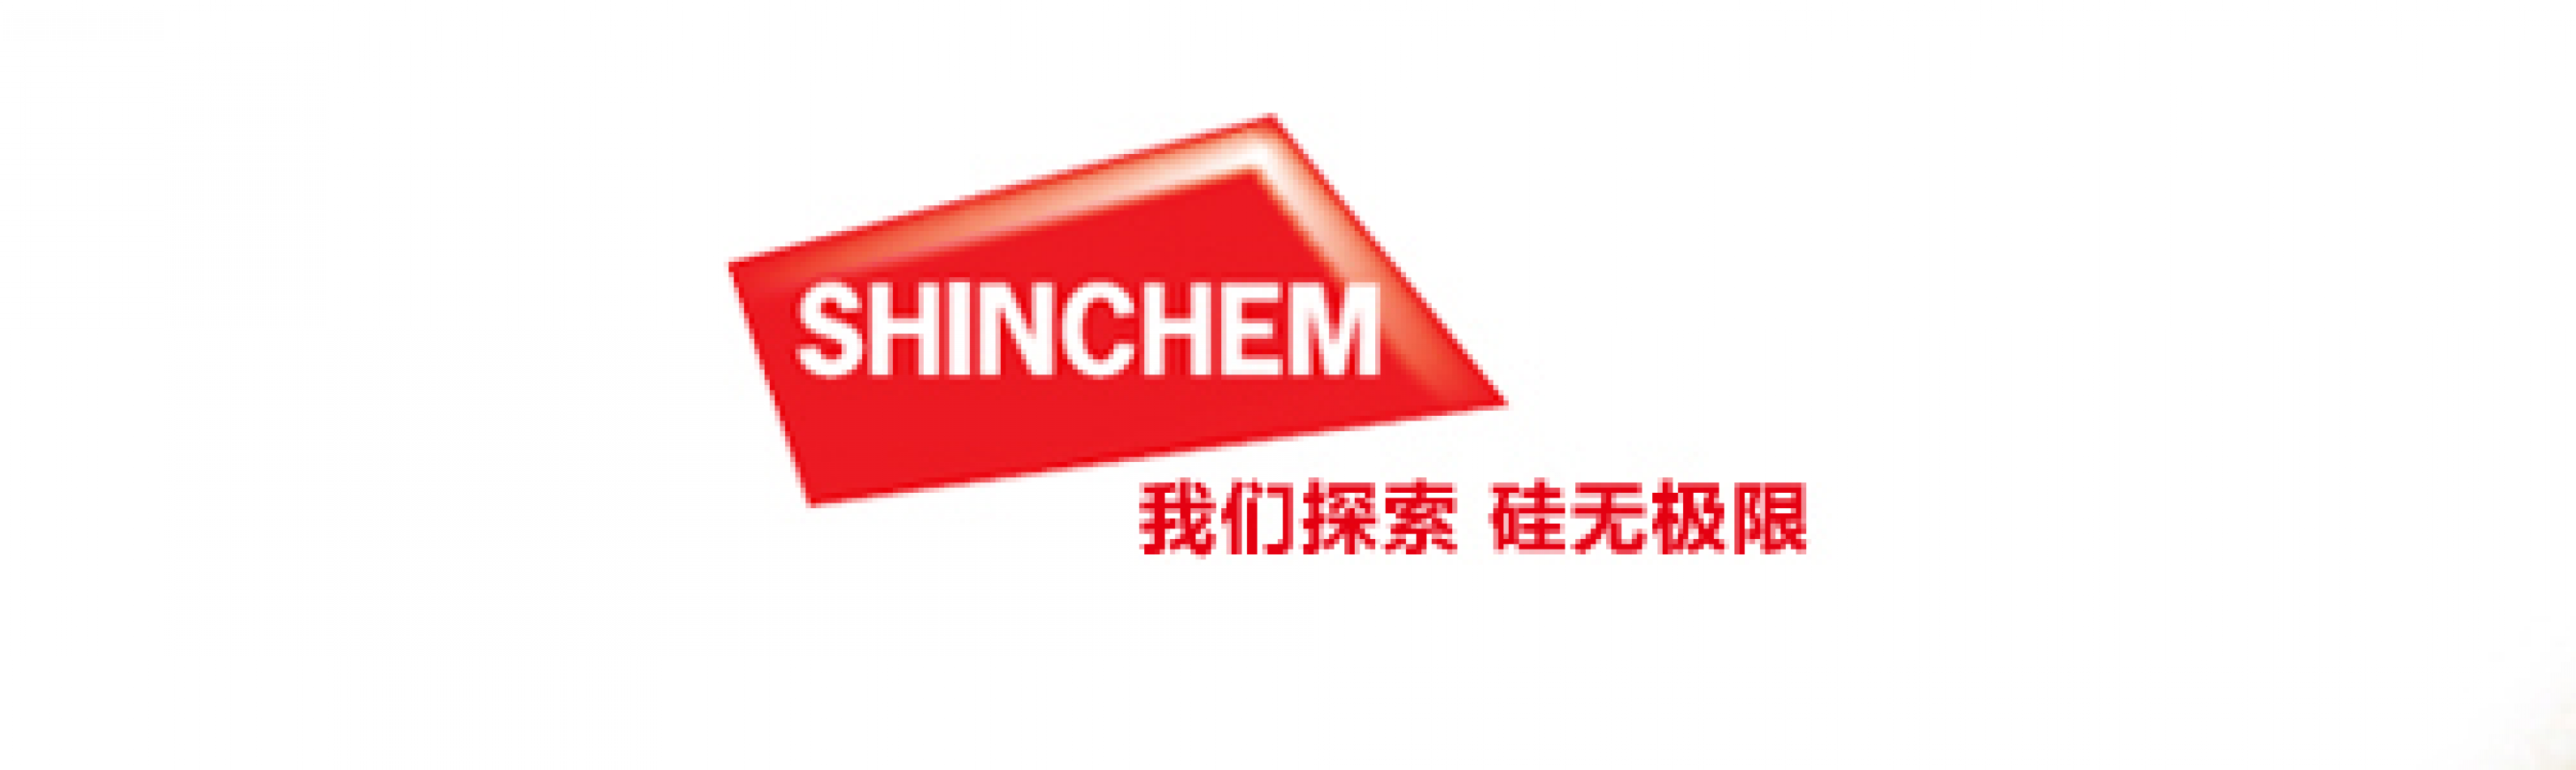 Shanghai Shinchem Chemicals Co., Ltd.